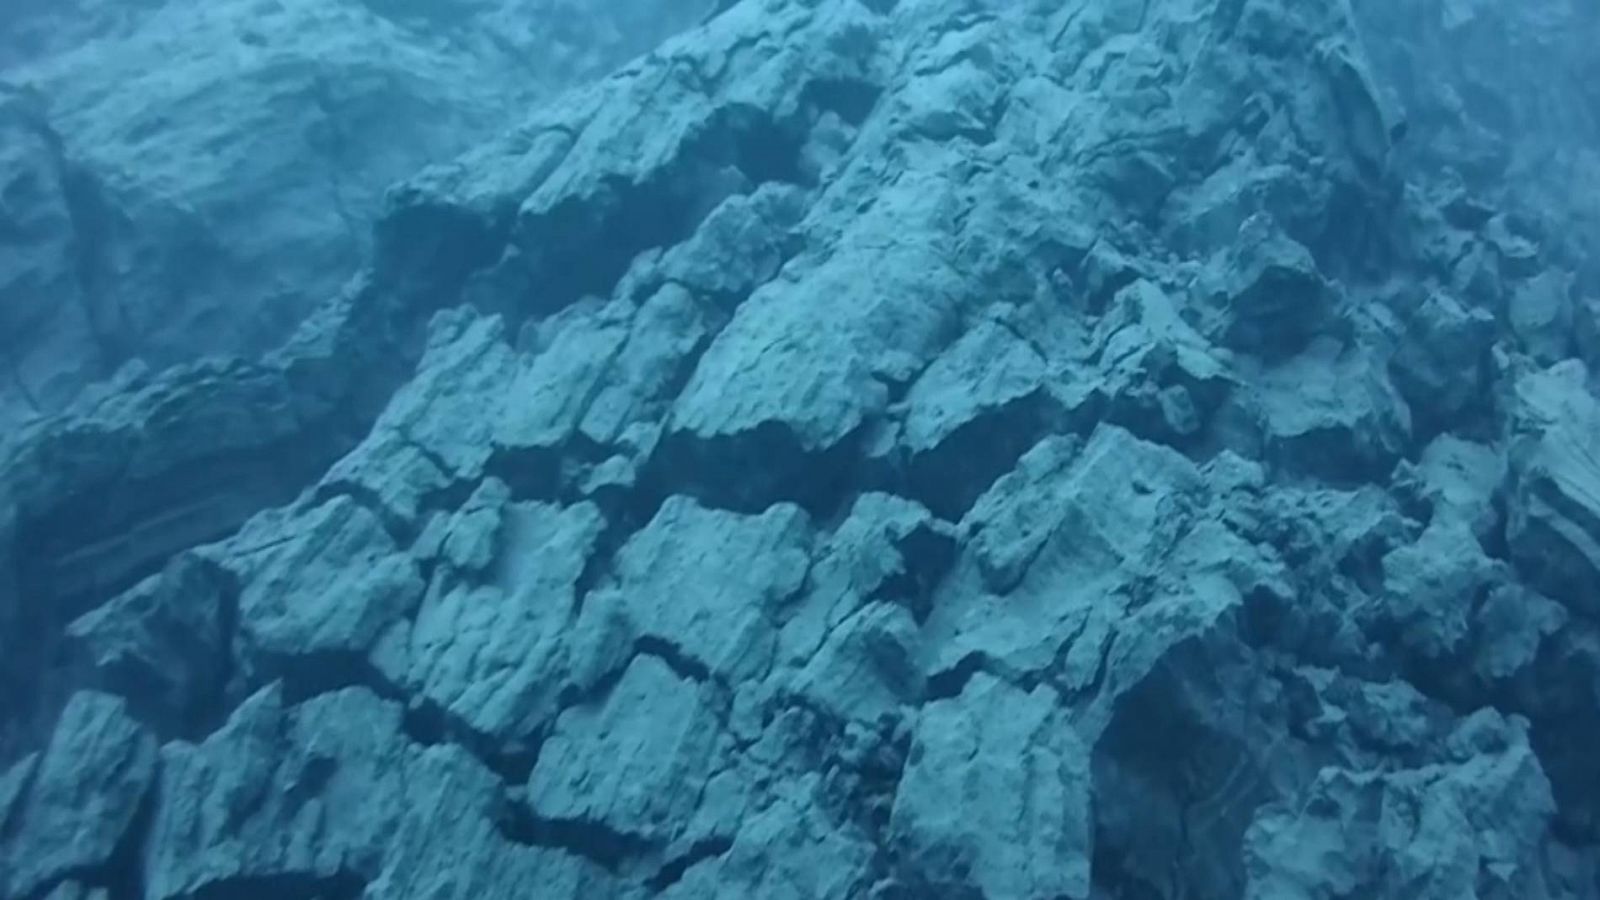 PEVOLCA muestran nuevas imágenes submarinas del delta lávico